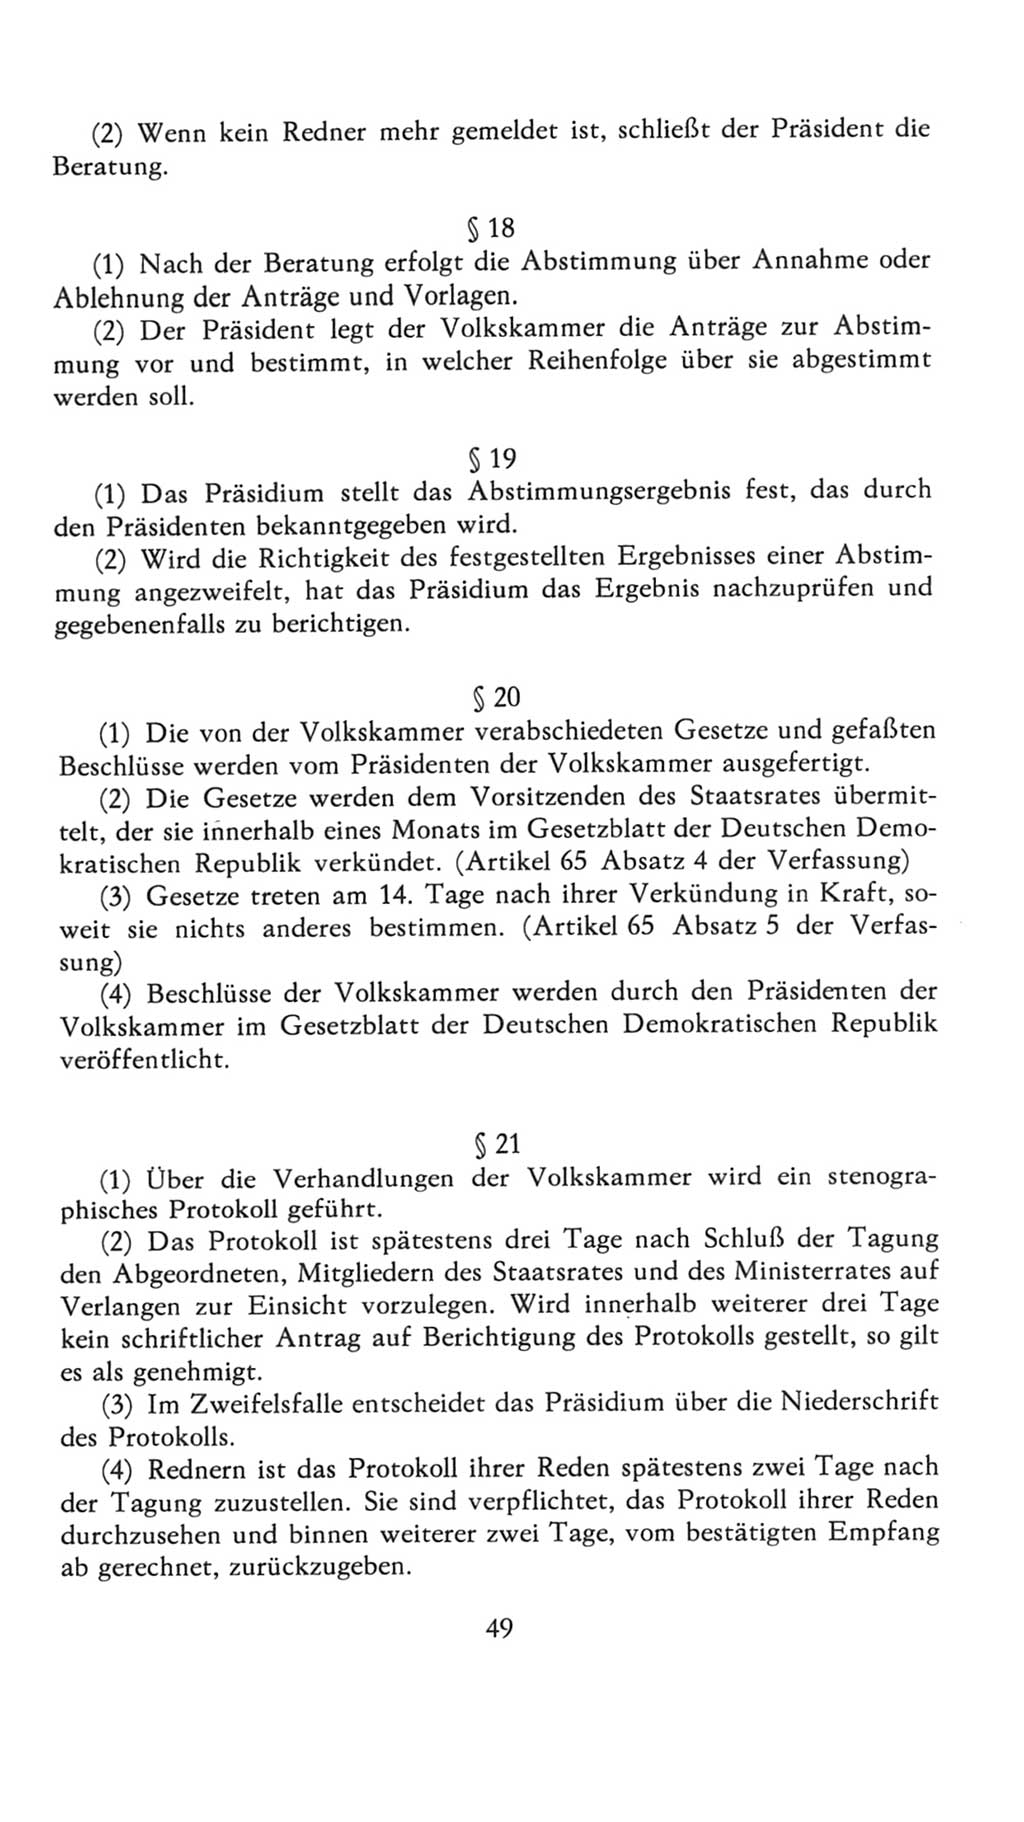 Volkskammer (VK) der Deutschen Demokratischen Republik (DDR), 7. Wahlperiode 1976-1981, Seite 49 (VK. DDR 7. WP. 1976-1981, S. 49)